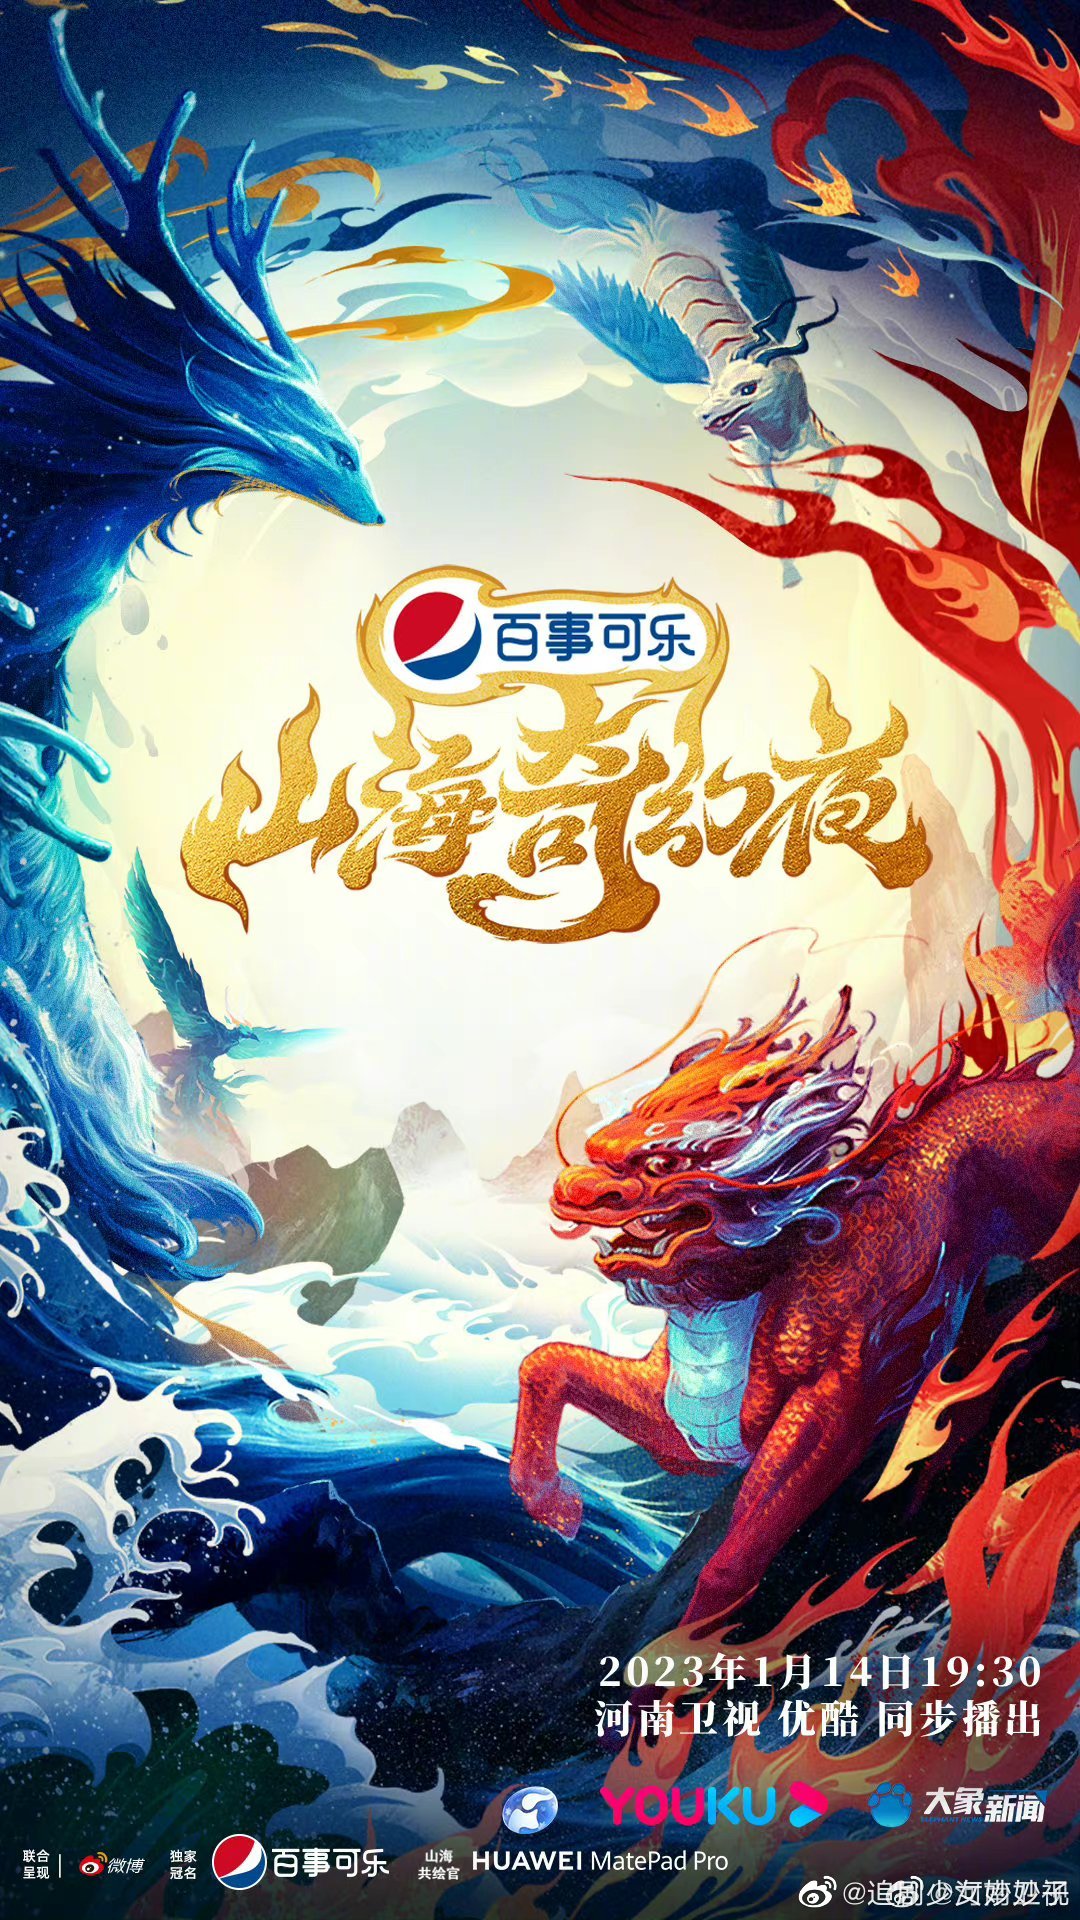 中国节日系列节目之山海奇幻夜在线观看